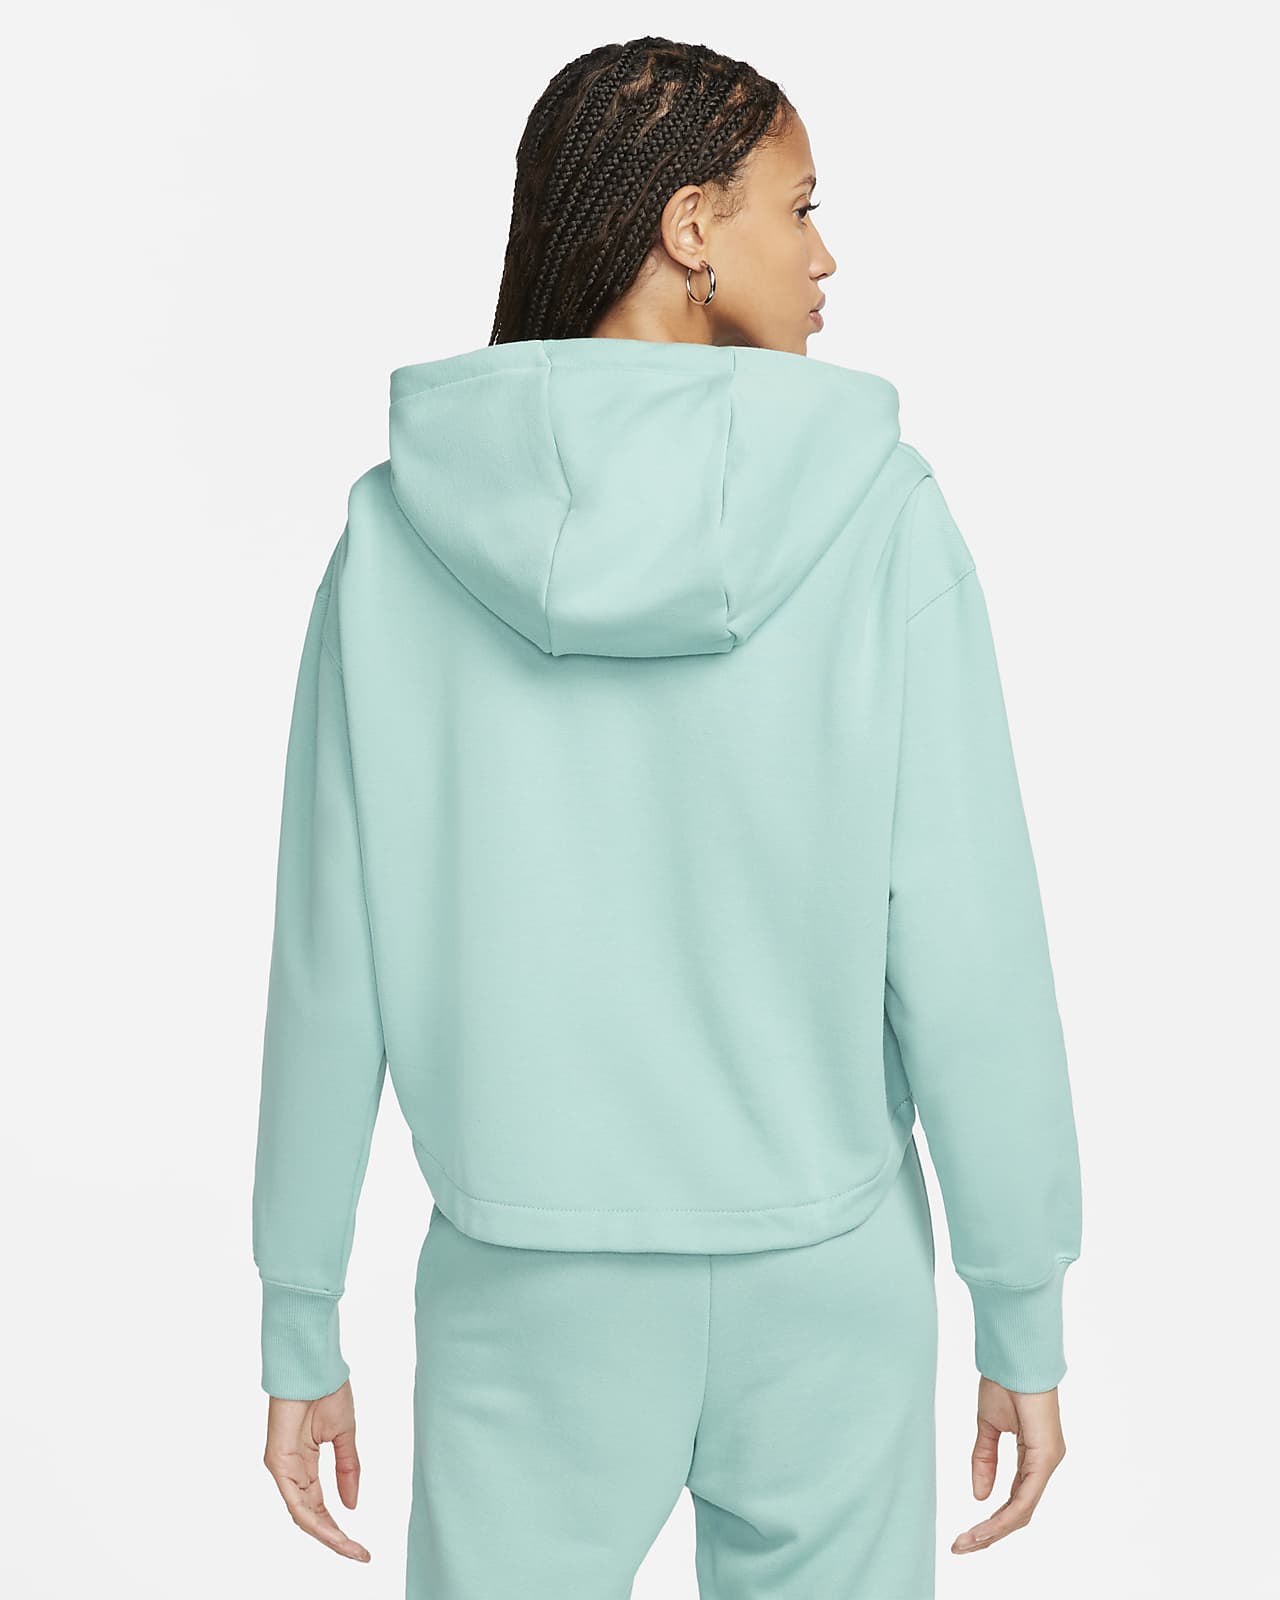 Nike Women\'s Modern Hoodie. Fleece Oversized Terry Sportswear French